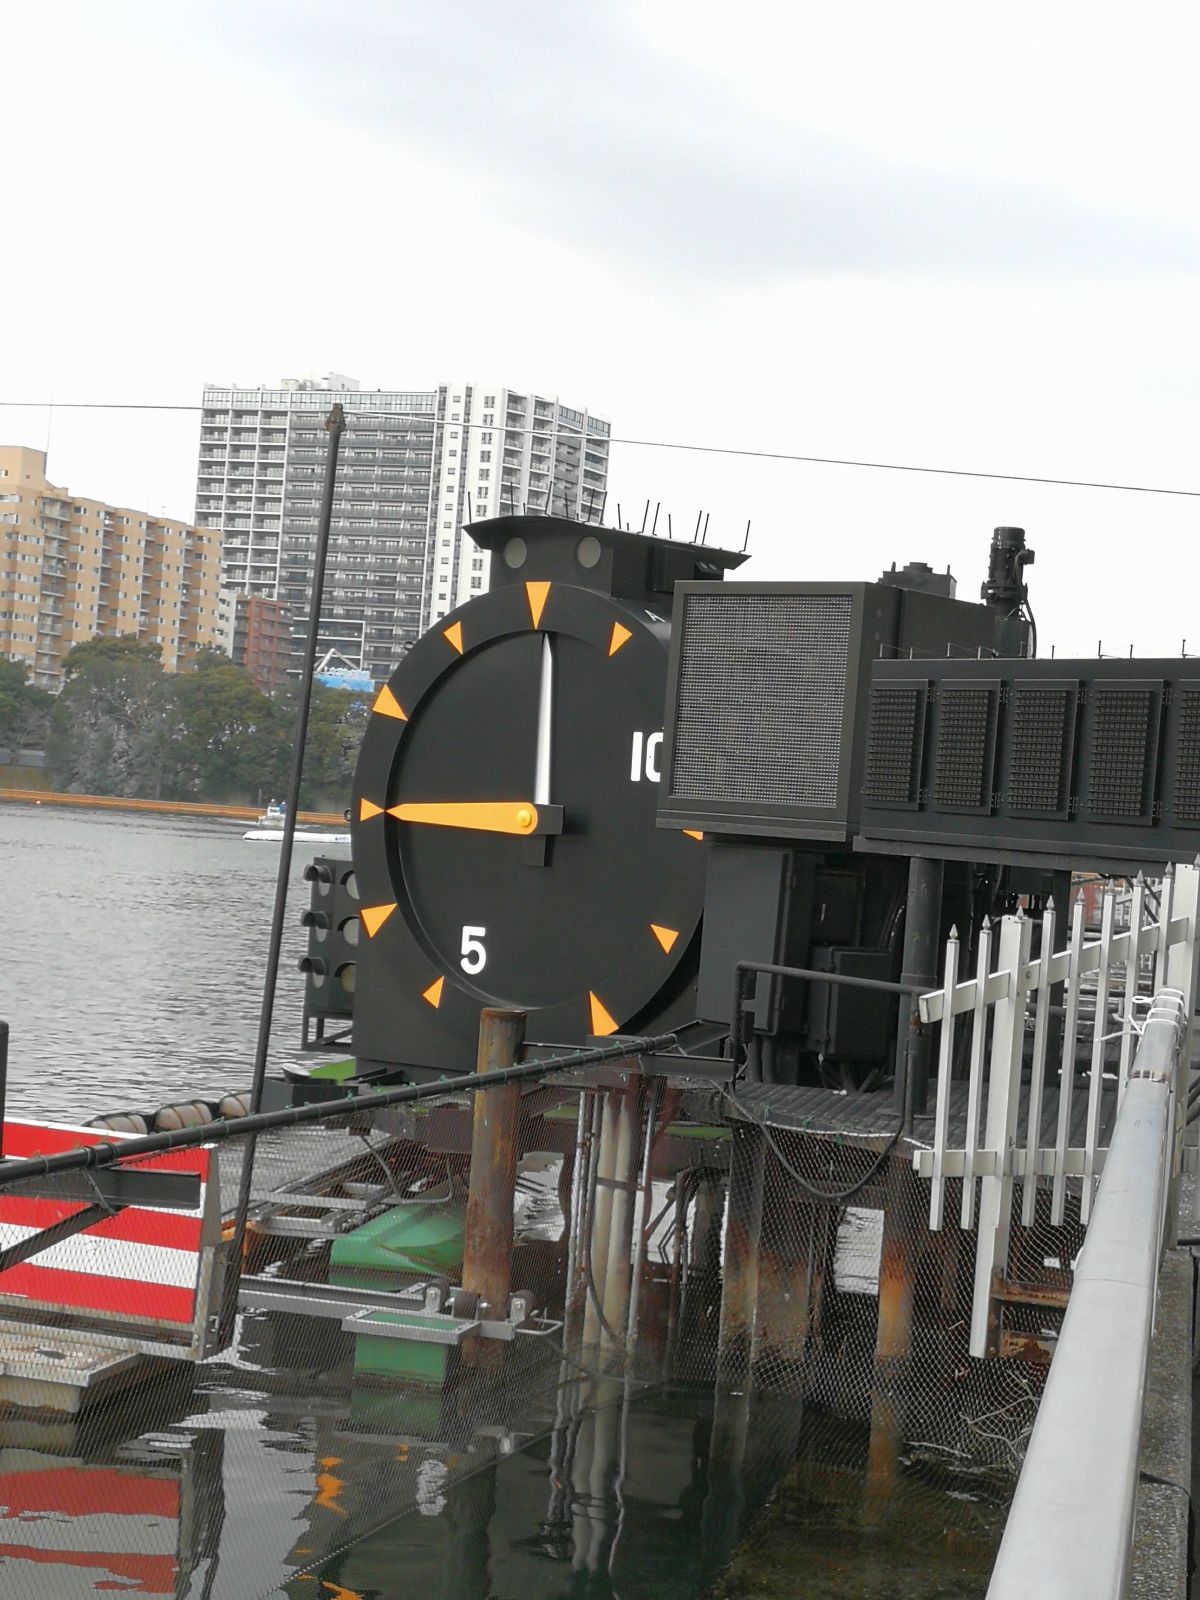 ボートレース場の時計